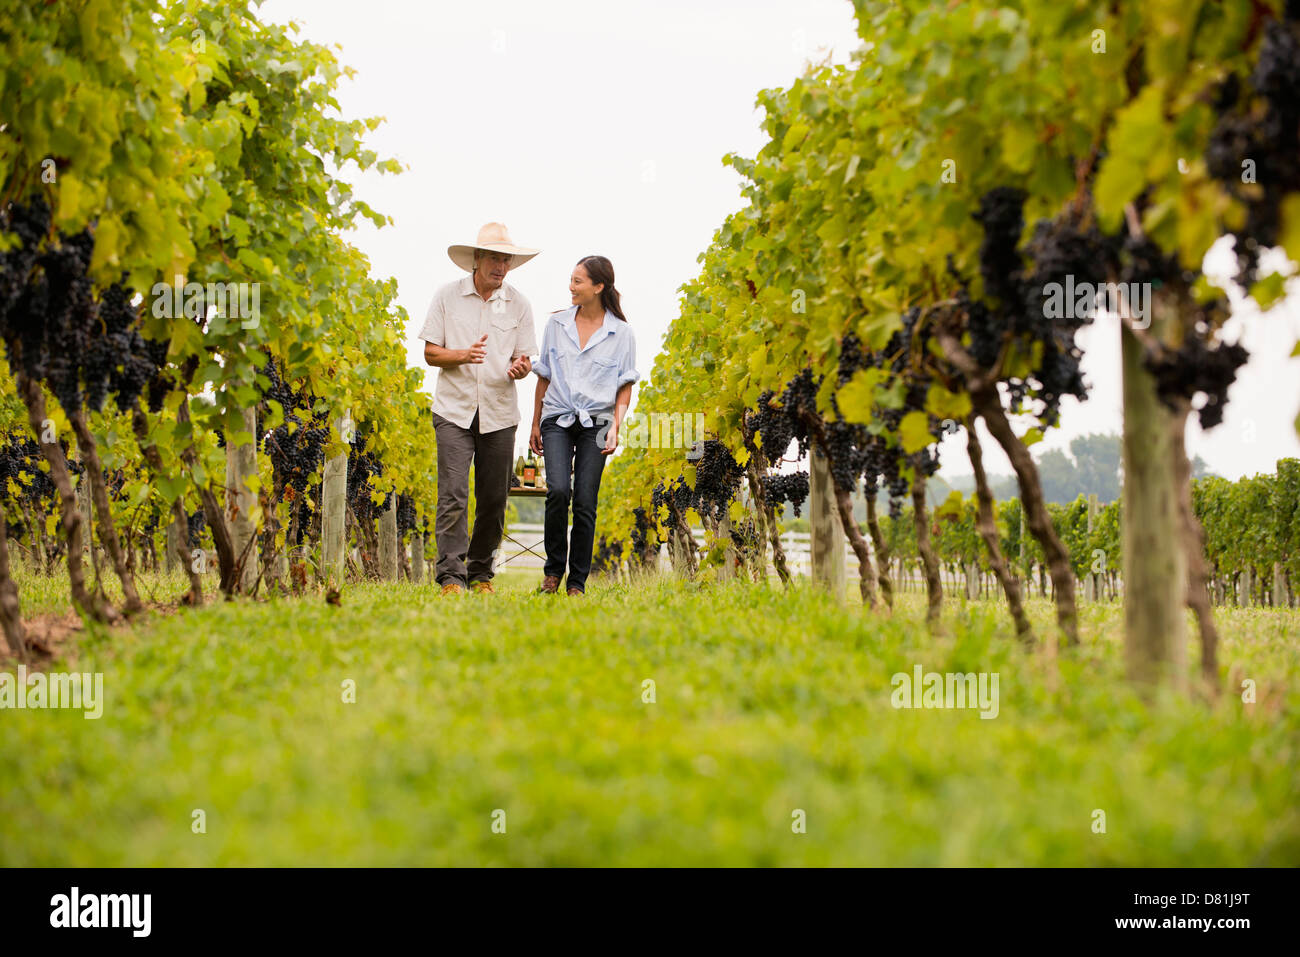 Los agricultores hablando en viña Foto de stock